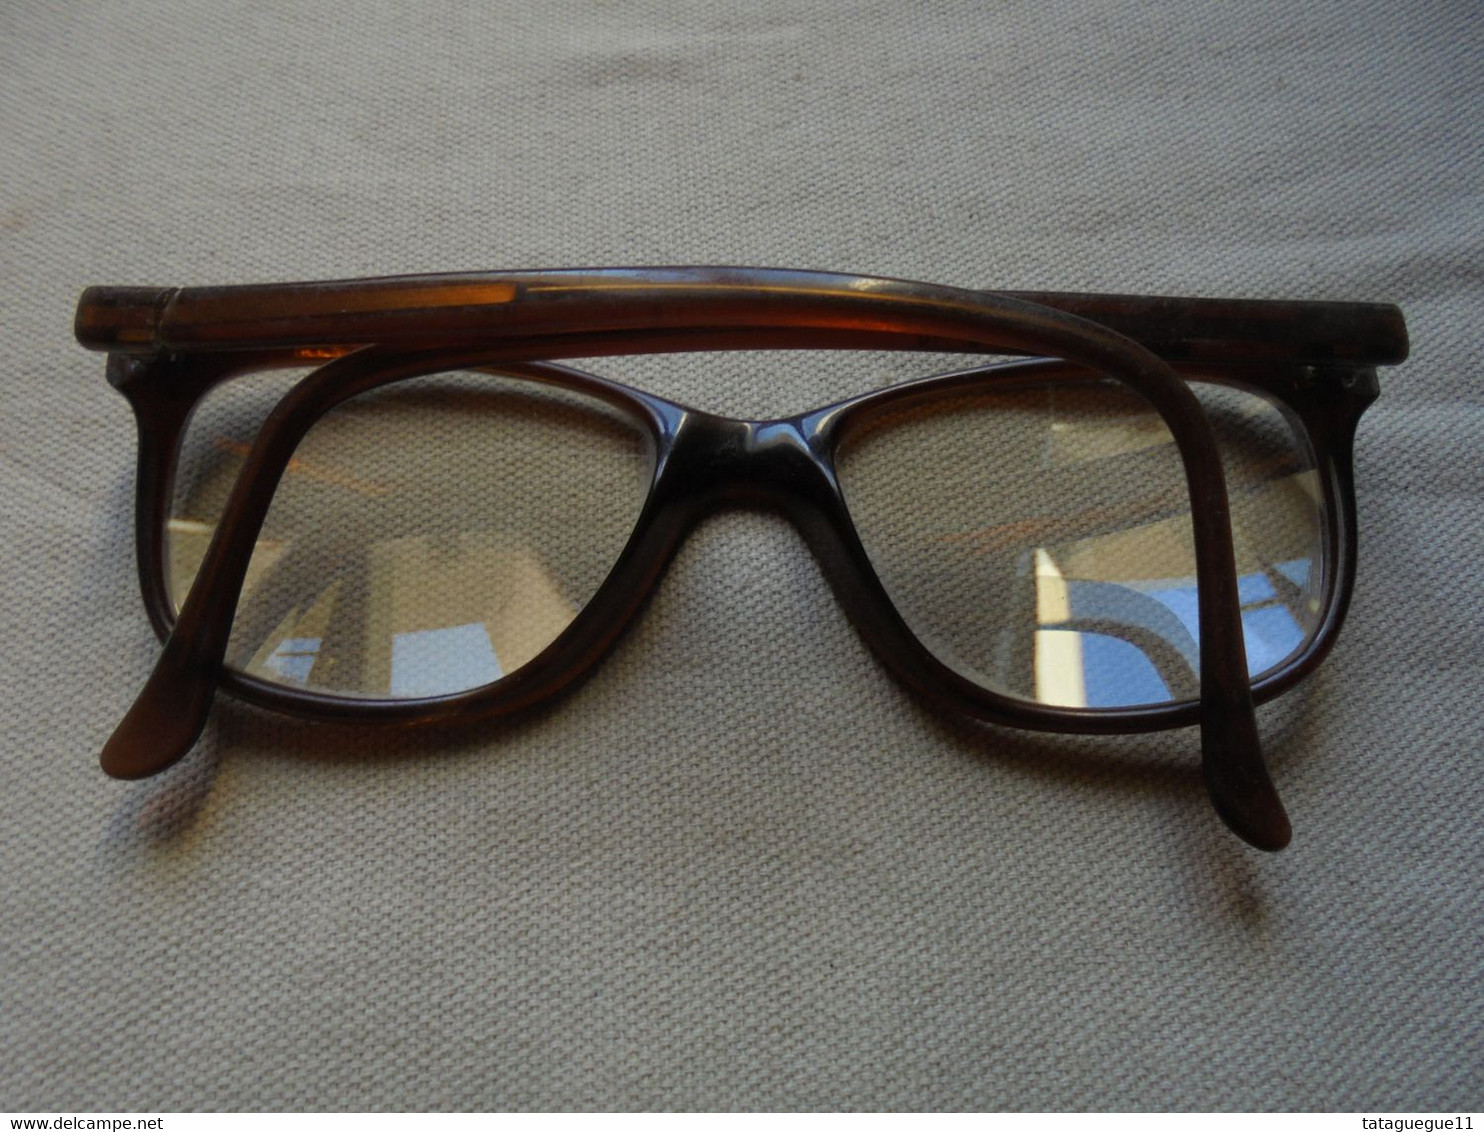 Vintage - Paire de lunettes de vue Lapeyre France S 48 pour femme